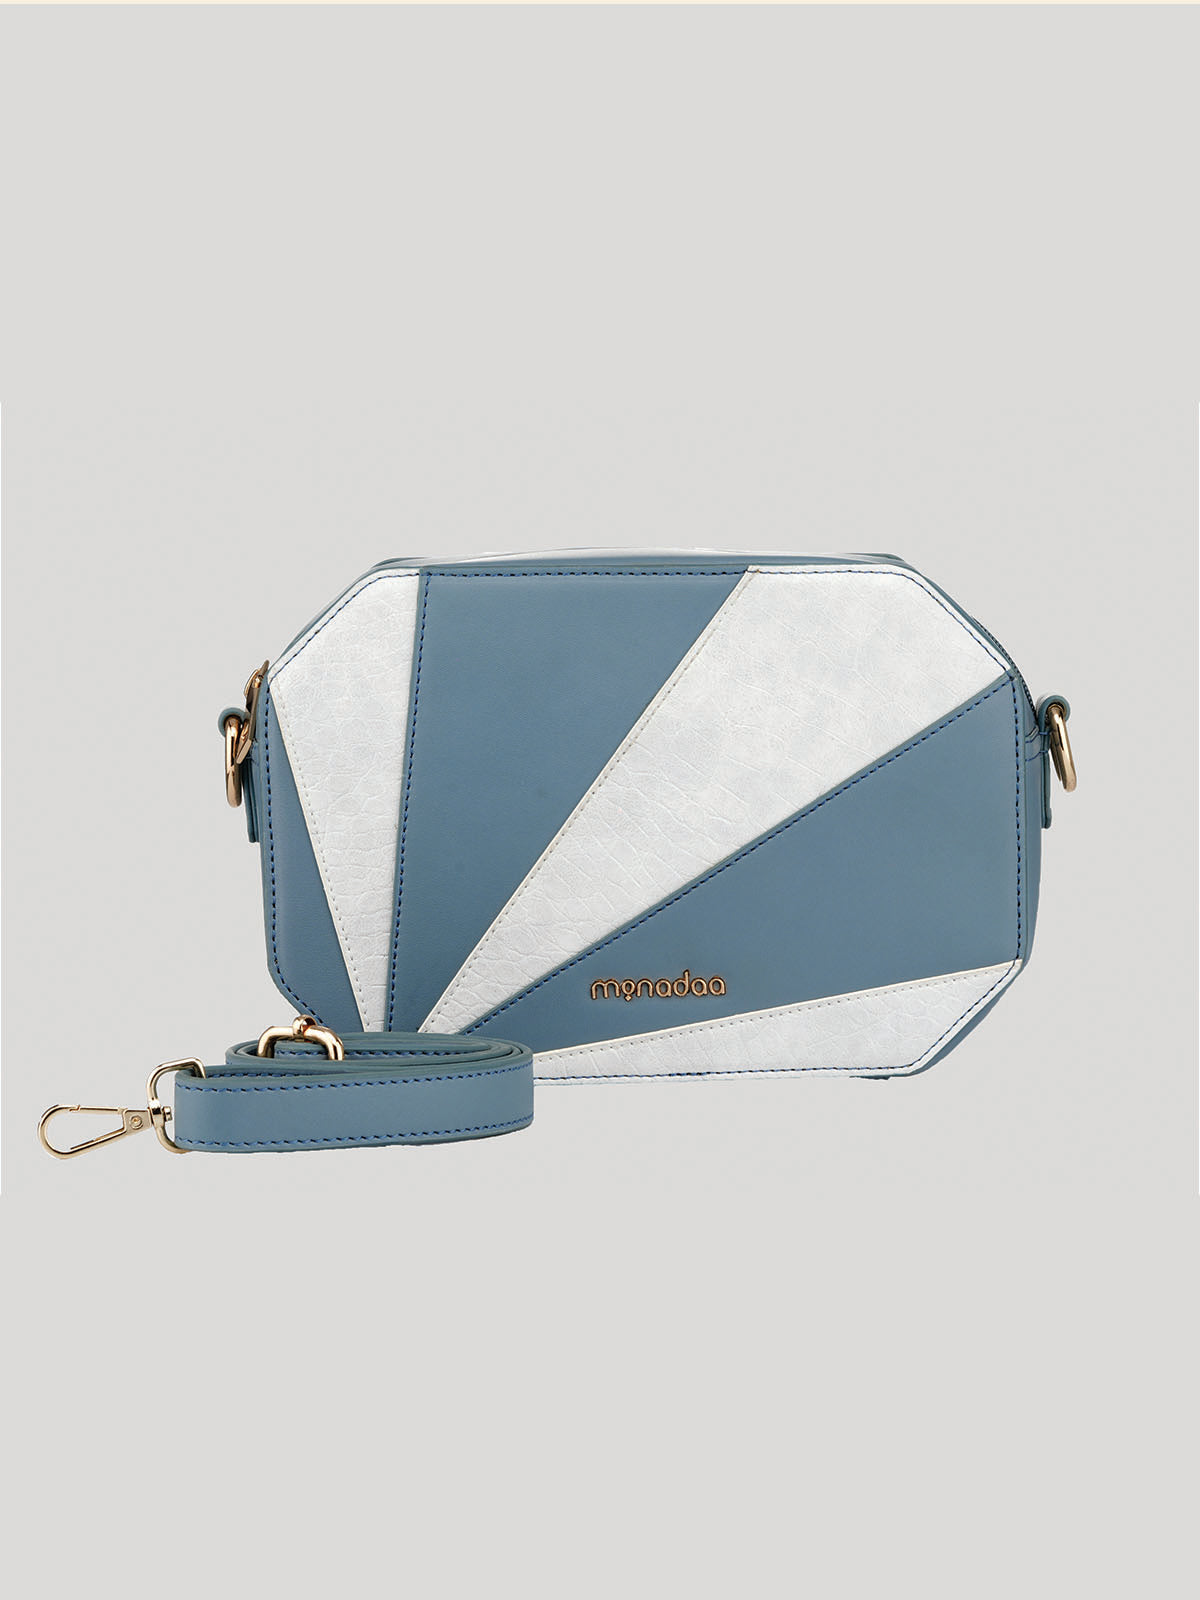 Skyblue Clemence Handbag